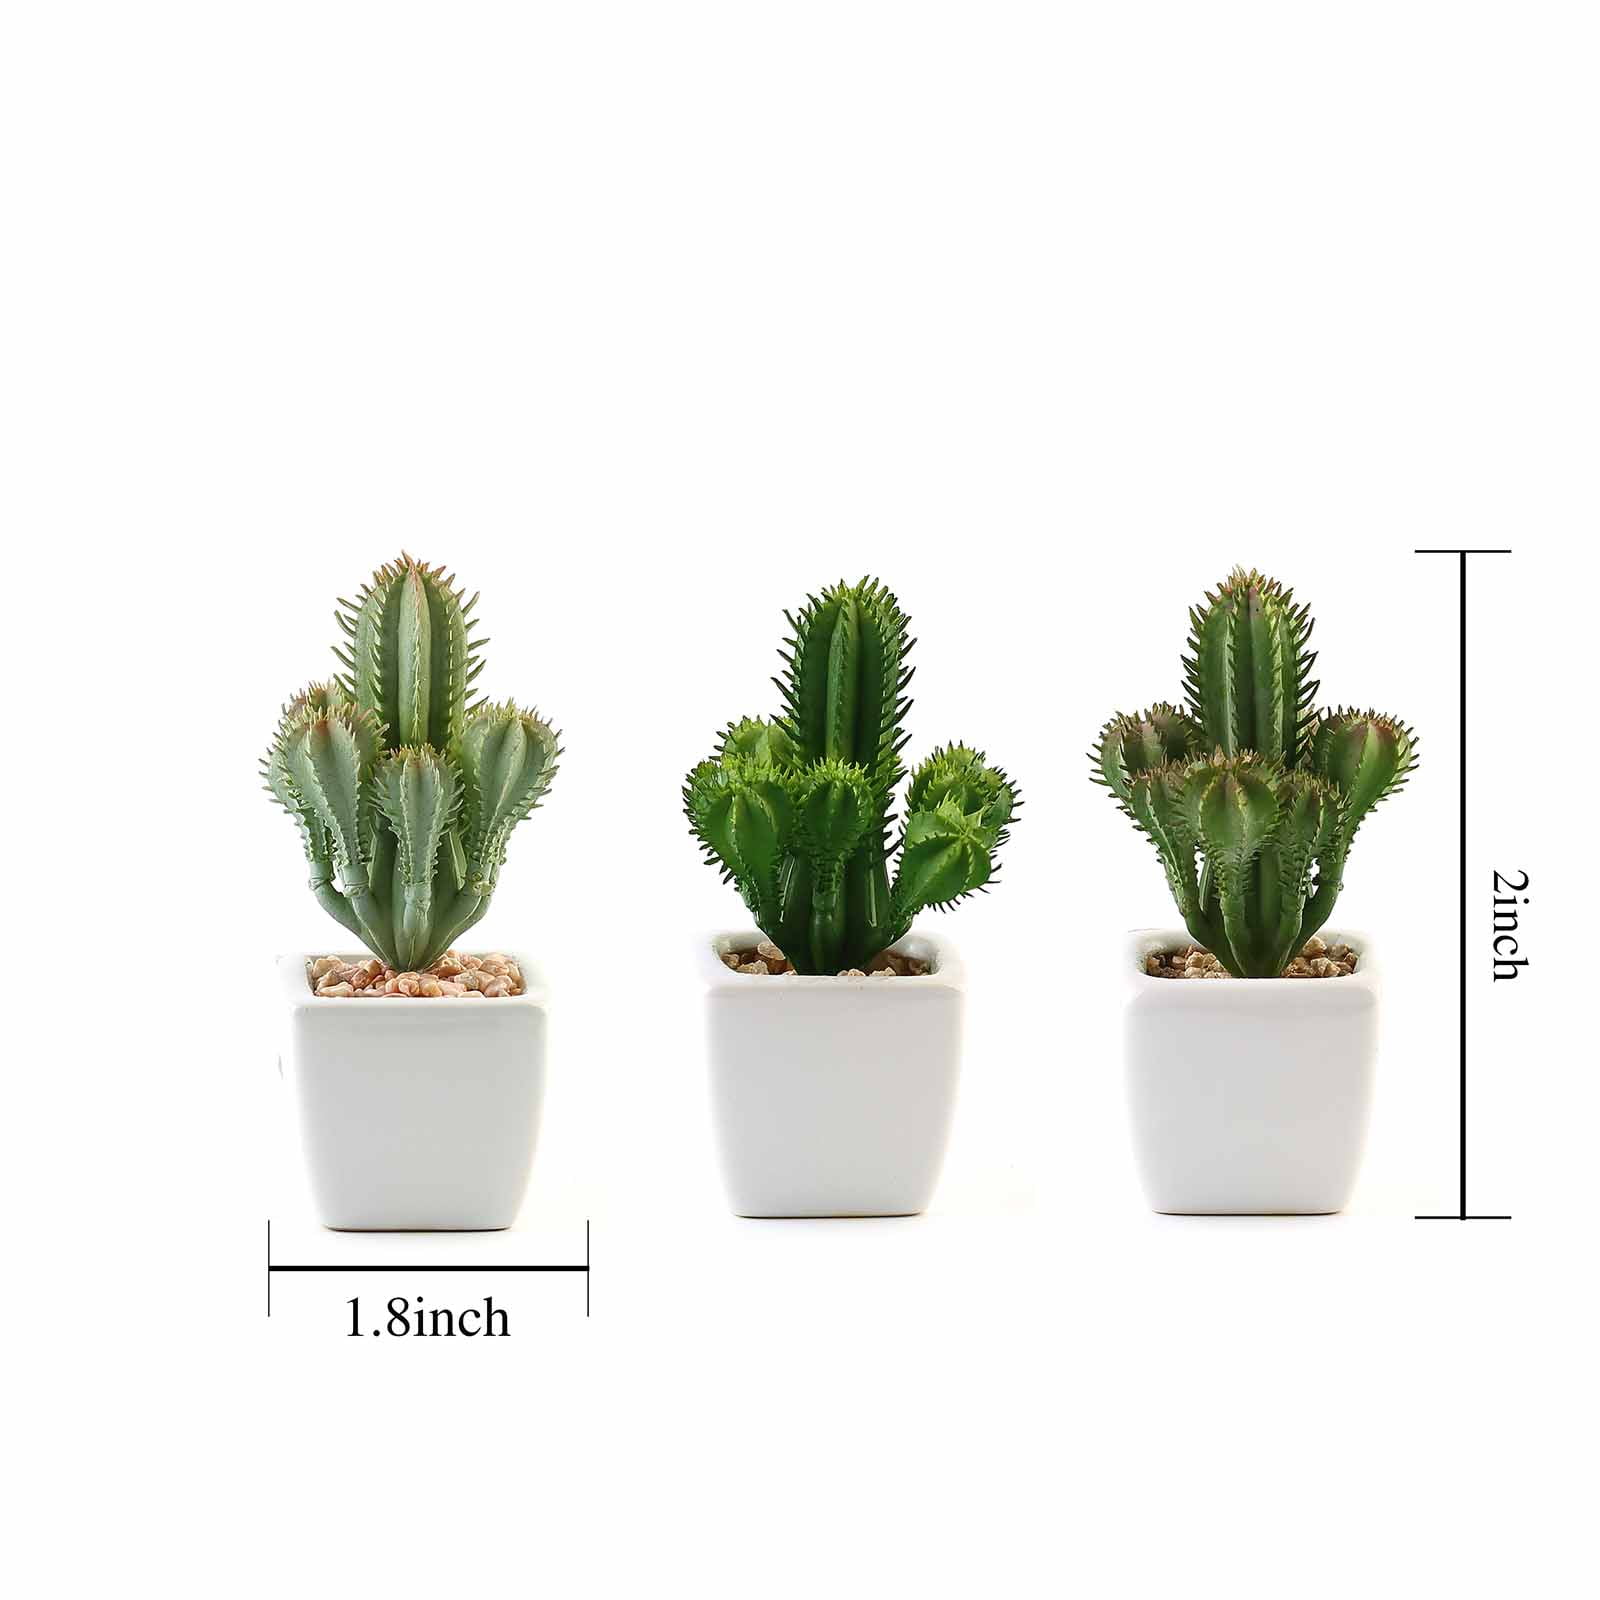 8.5" Faux Succulent Cactus in Ceramic Pot Plants rocks Wedding Decor Decorations 